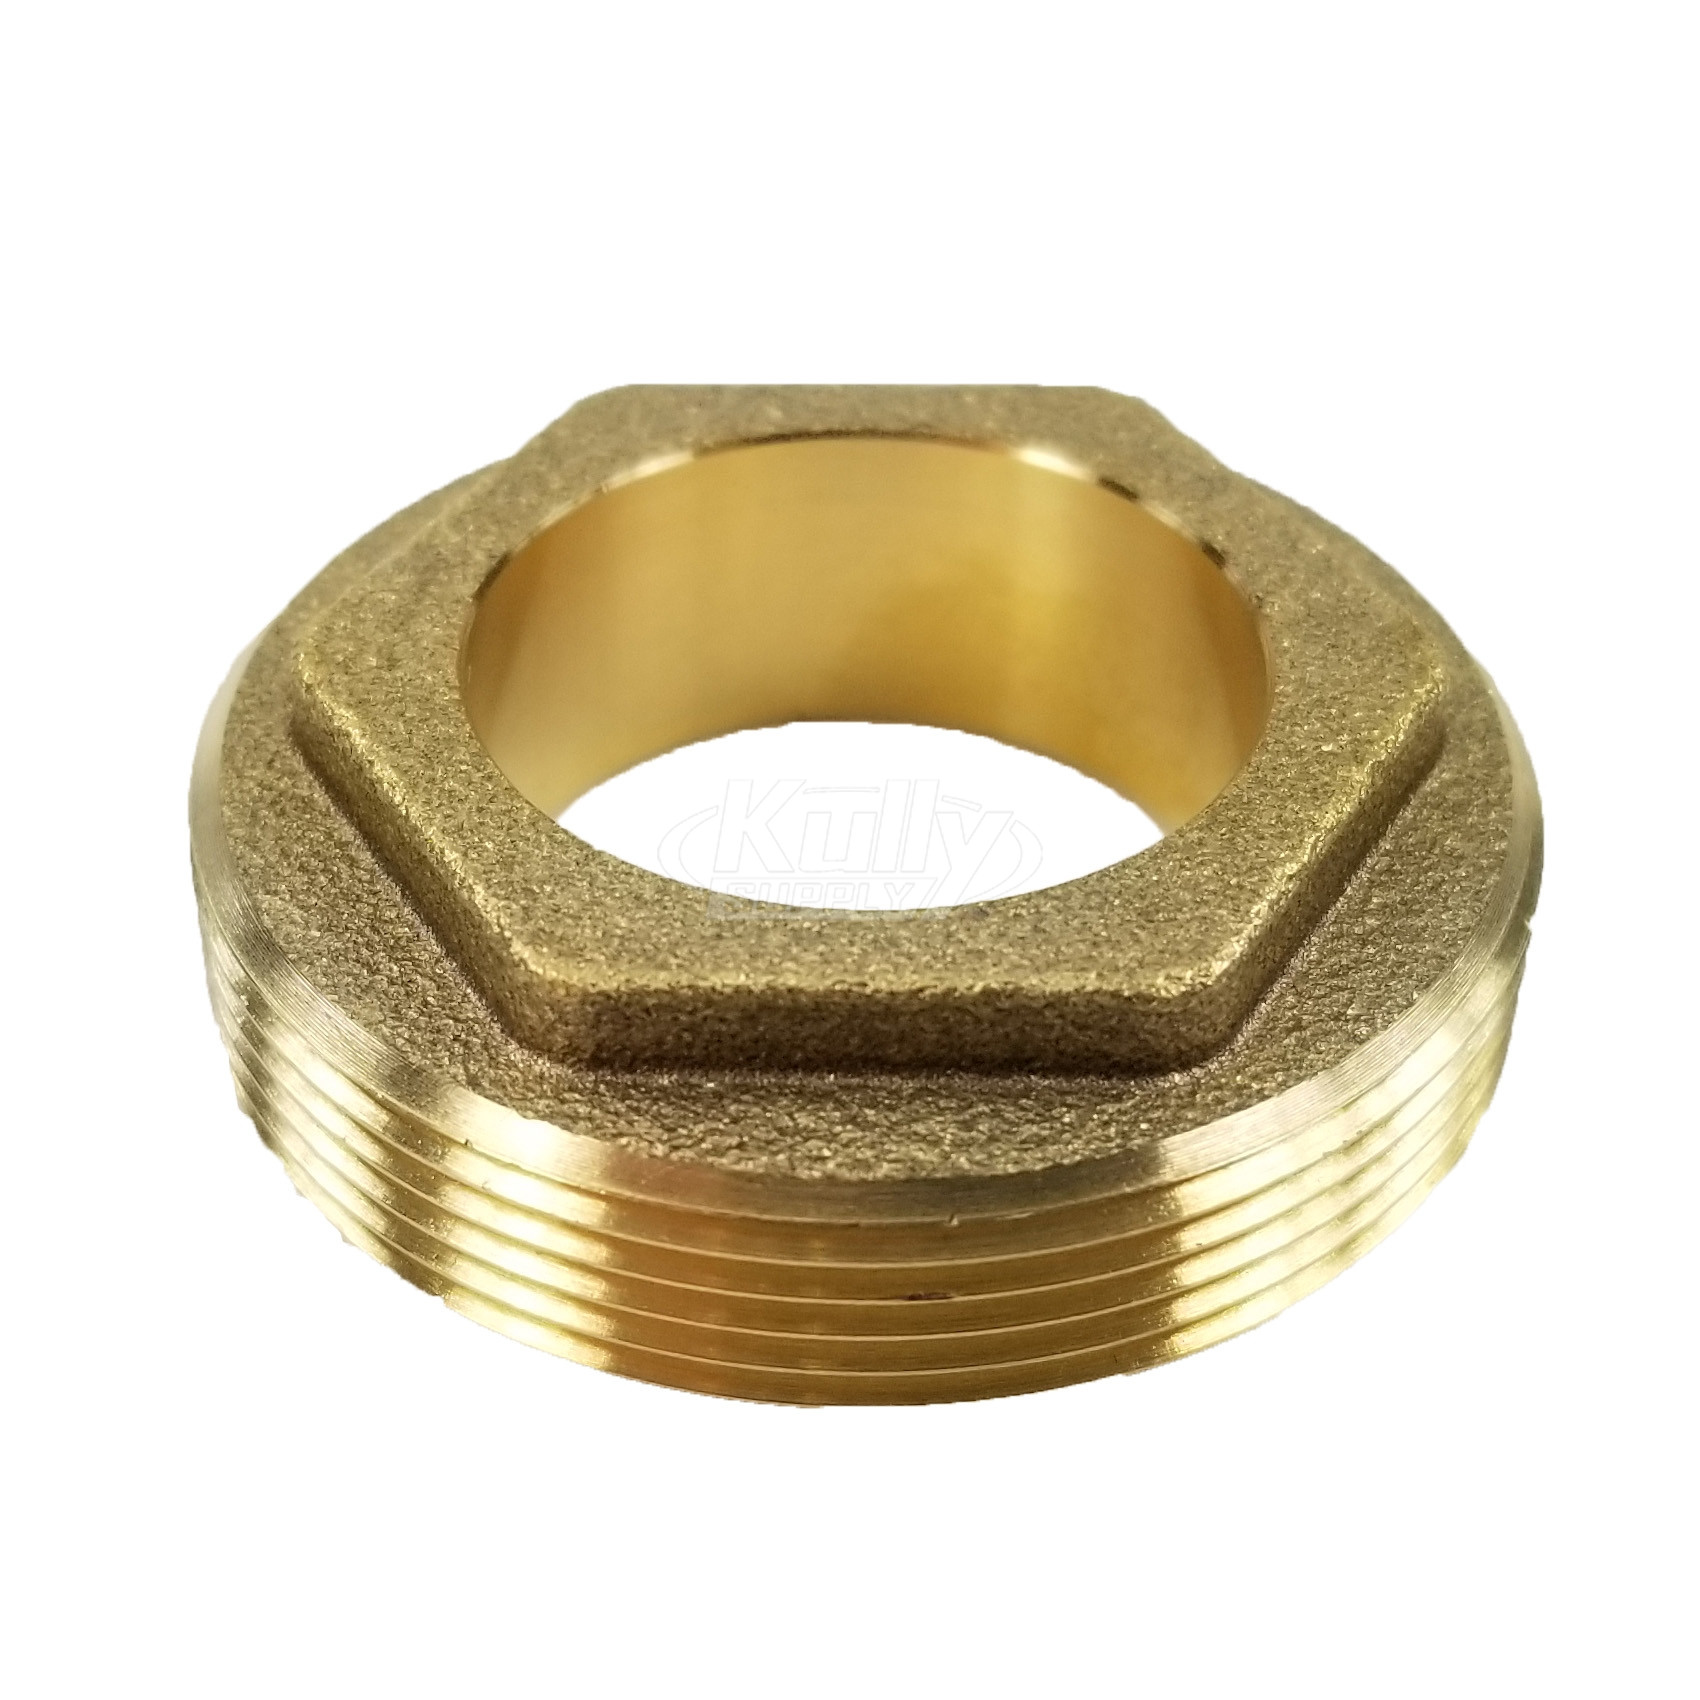 Zurn 62795001 Nut, Brass, Retaining For Cartridge, (Z822/Z823/Z824)